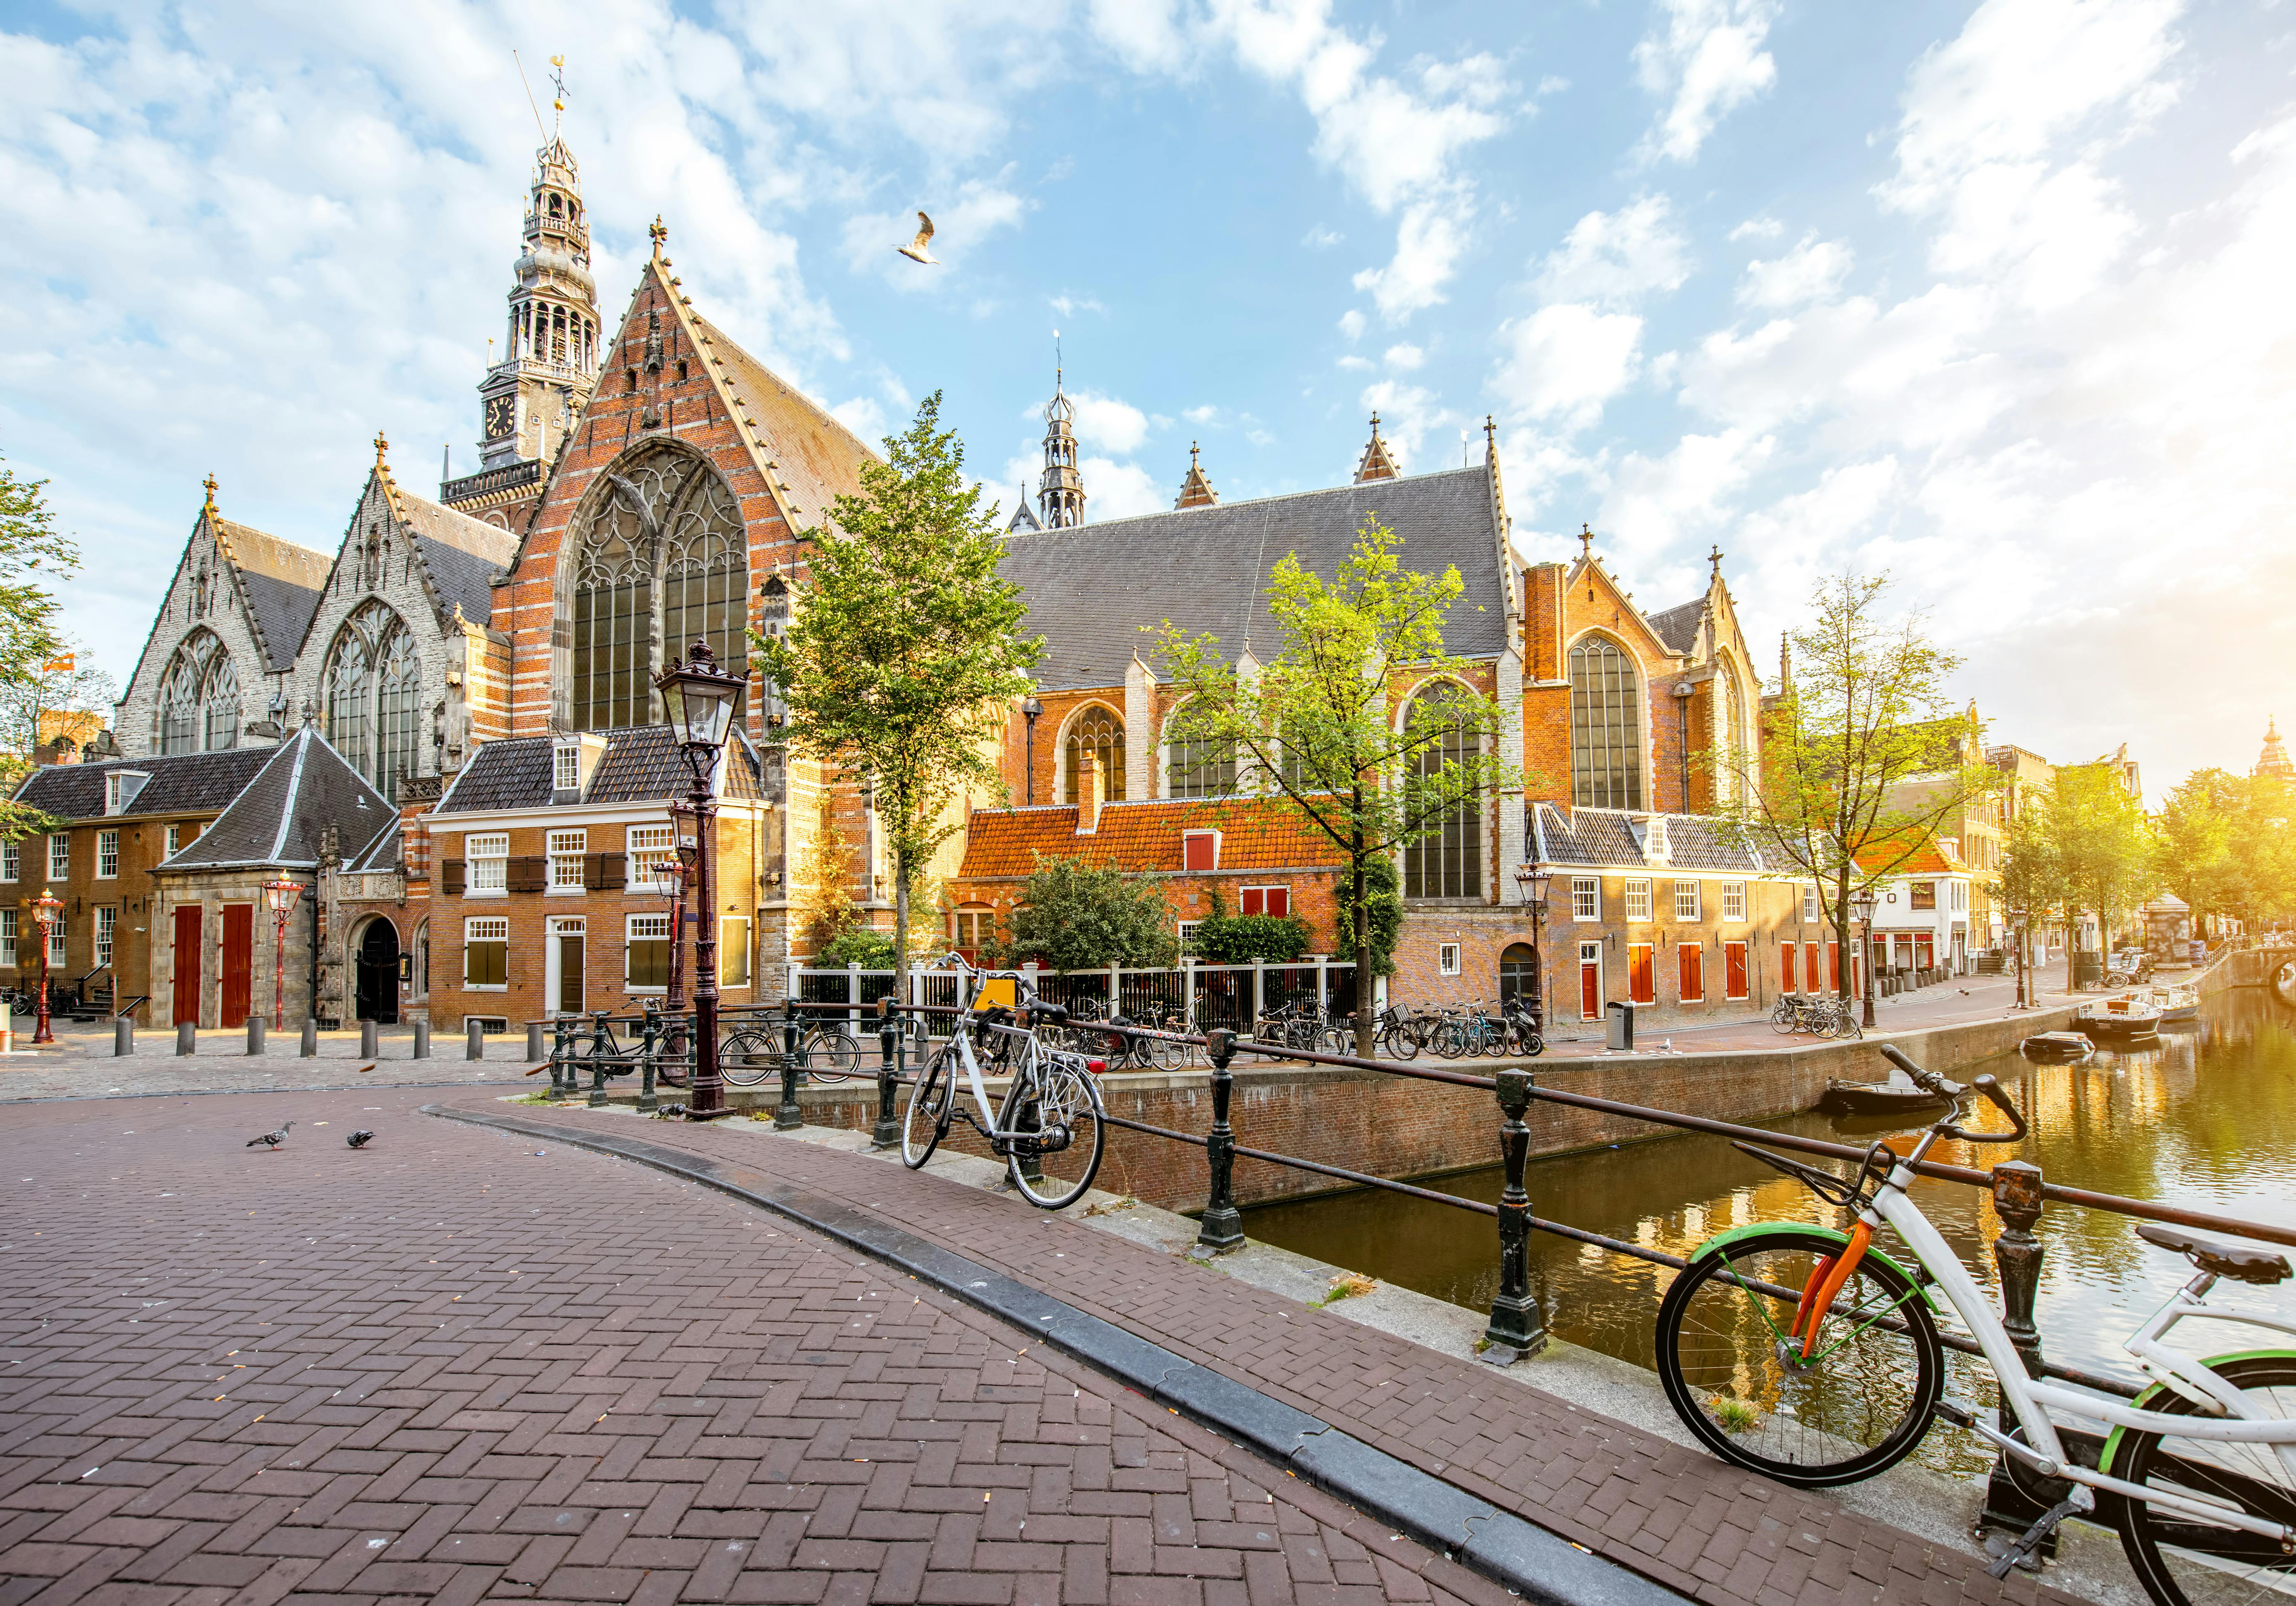 Smart wandeling in Amsterdam met een interactief stadsspel